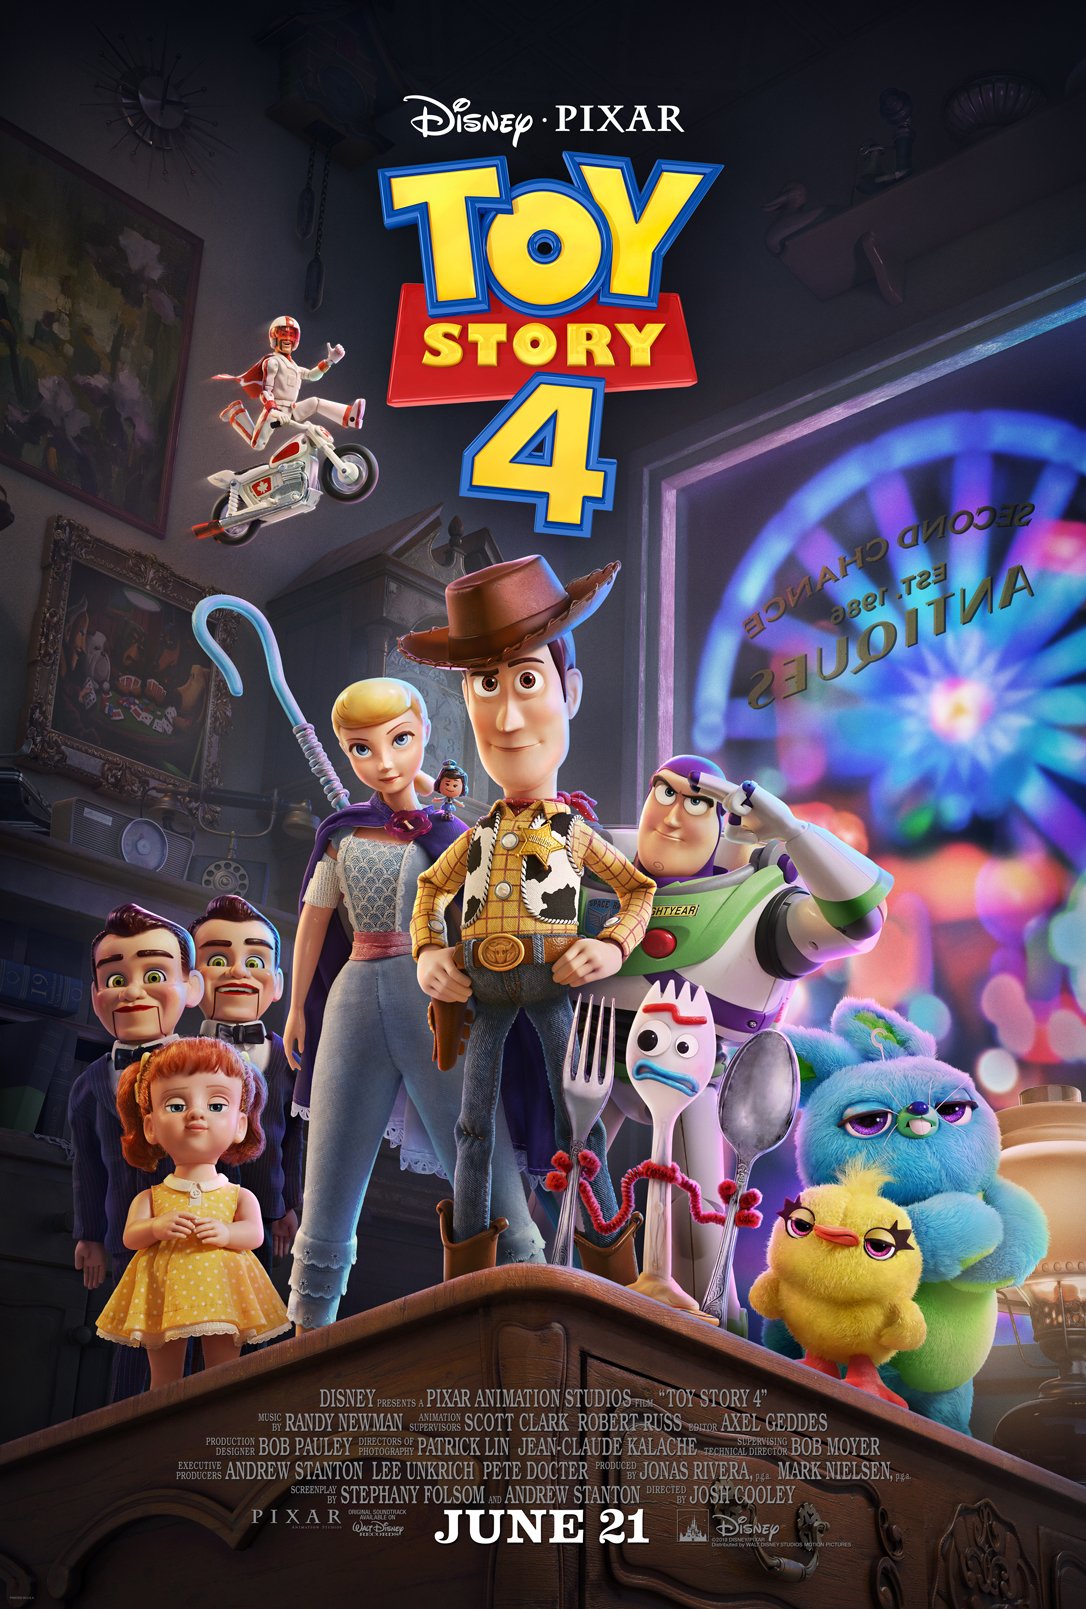 I'm Trash - Toy Story 4 Forky Plush Toy recalled by Disney